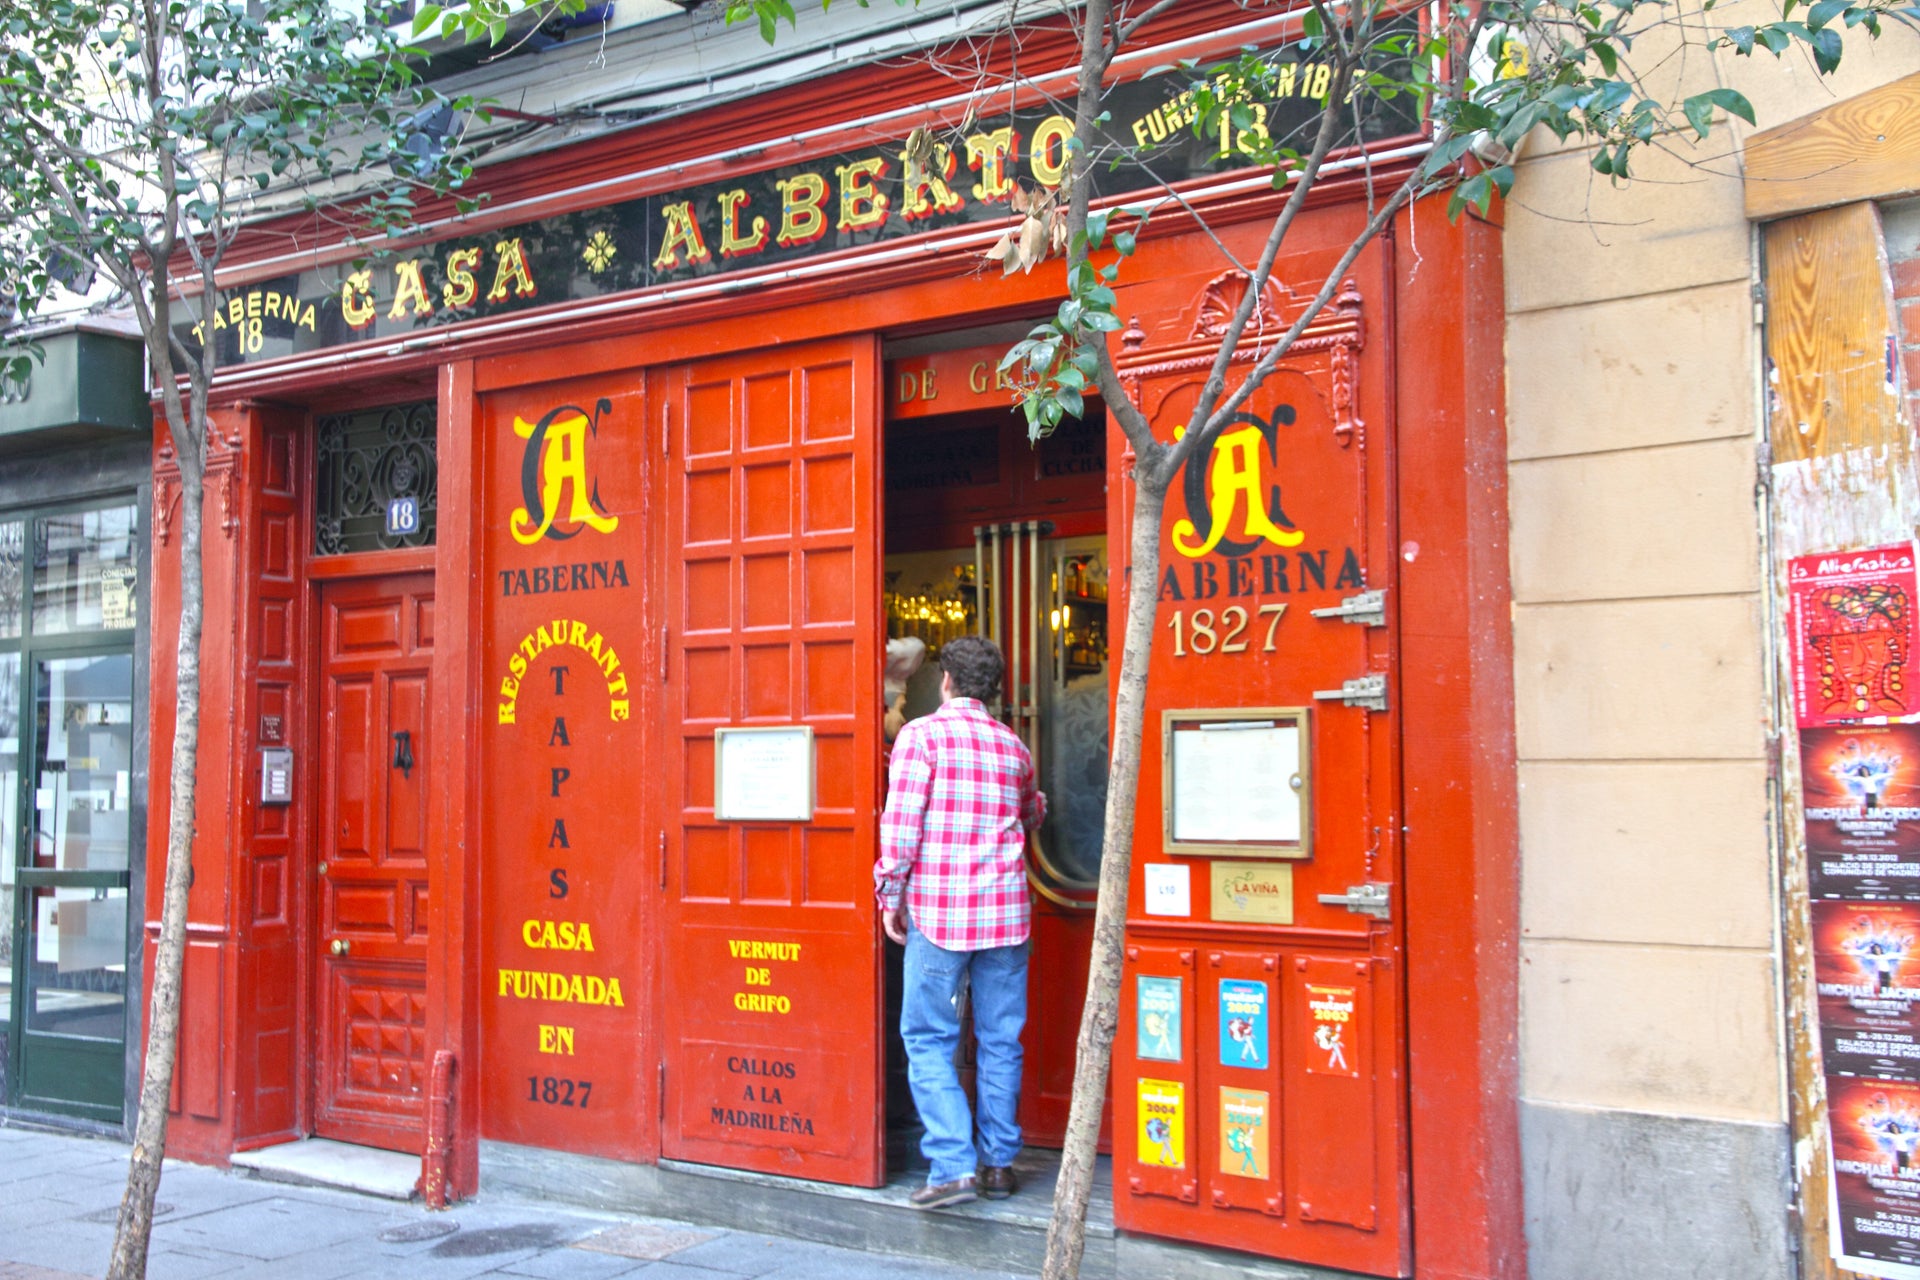 Tour delle taverne storiche di Madrid